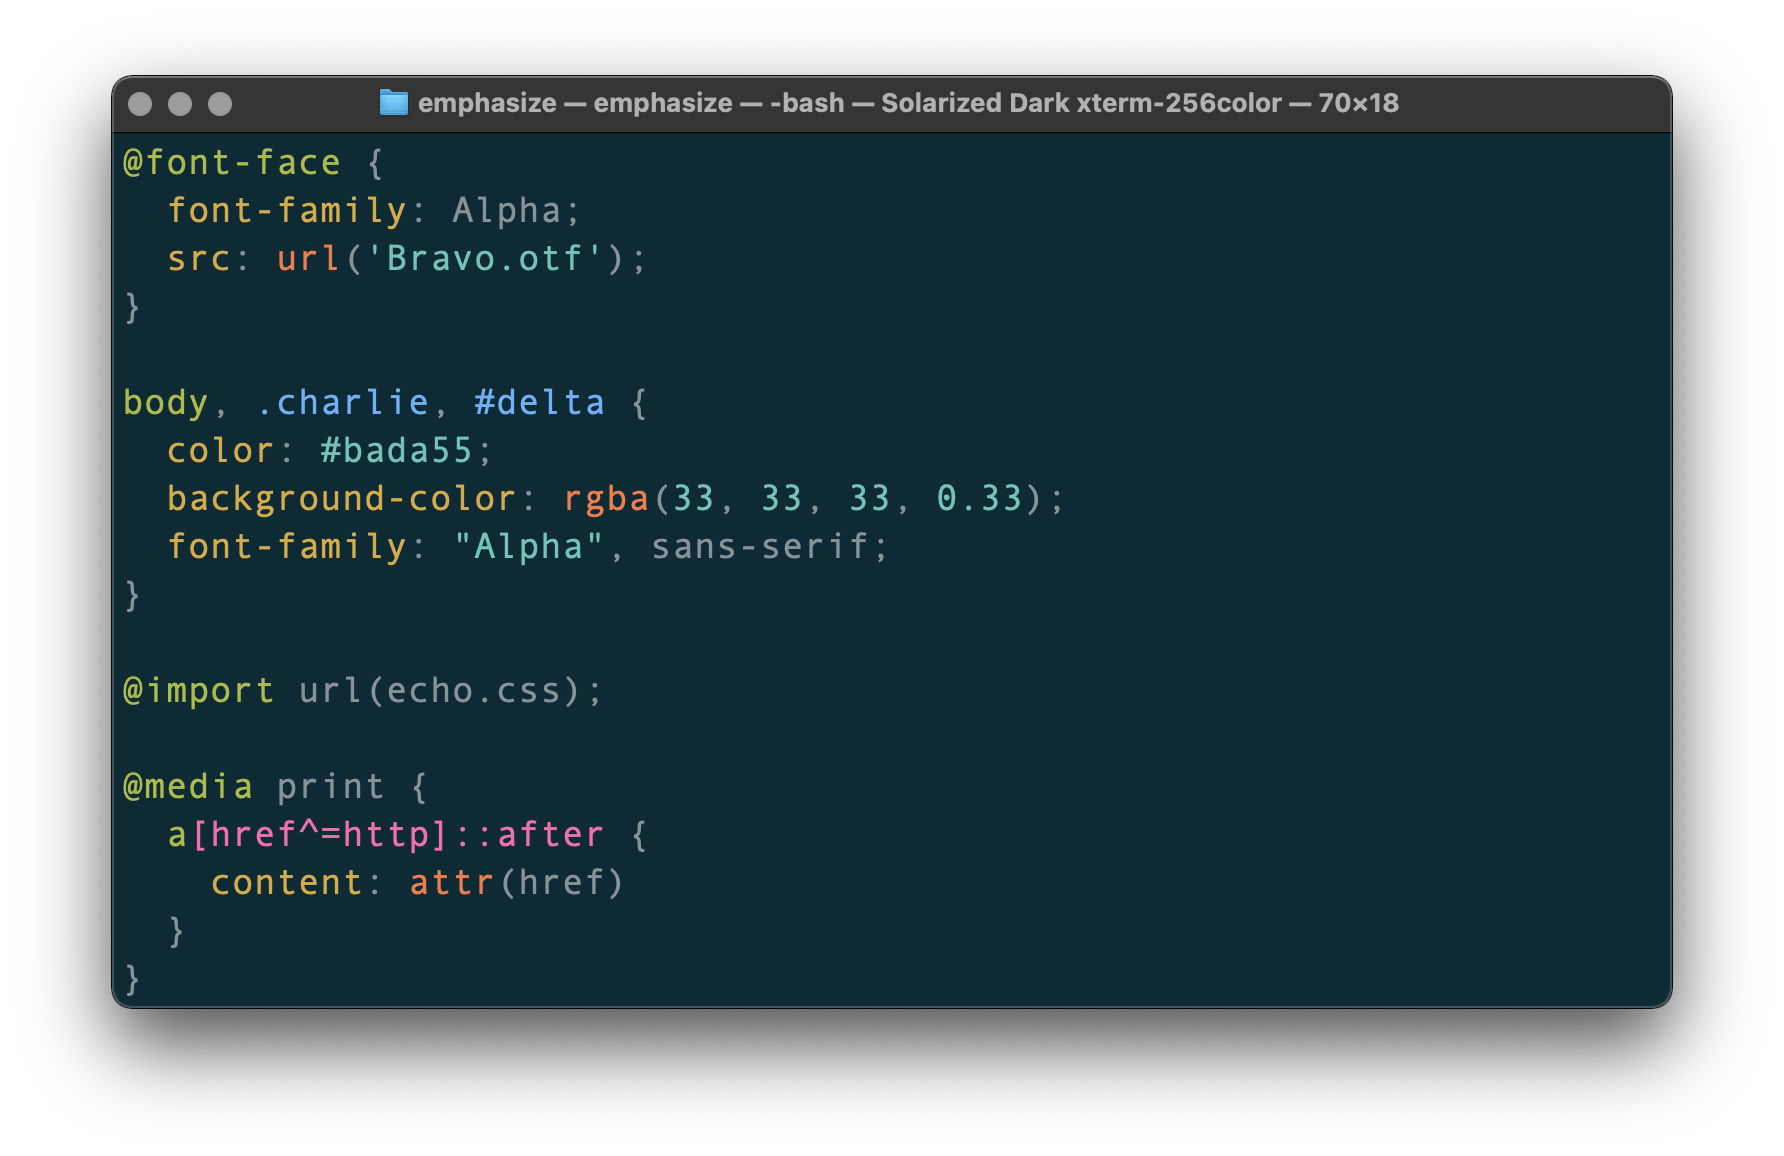 Screenshot showing the code in terminal